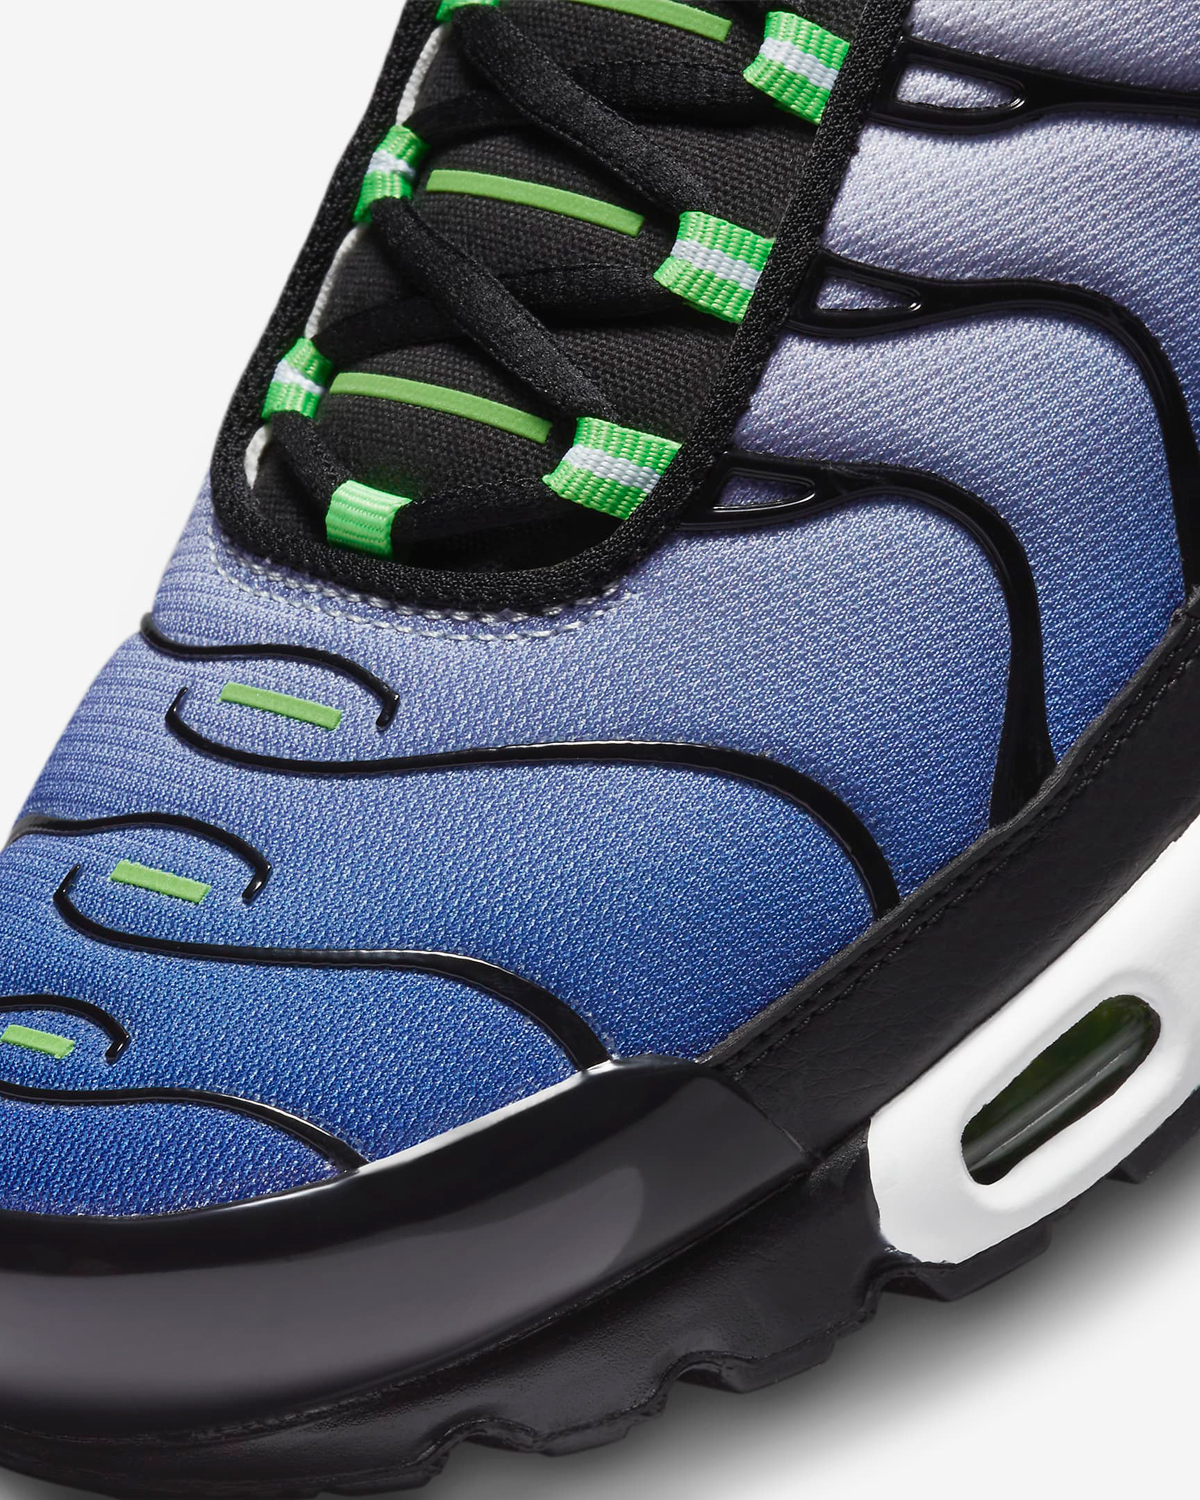 Nike-Air-Max-Plus-Icons-Scream-Green-7